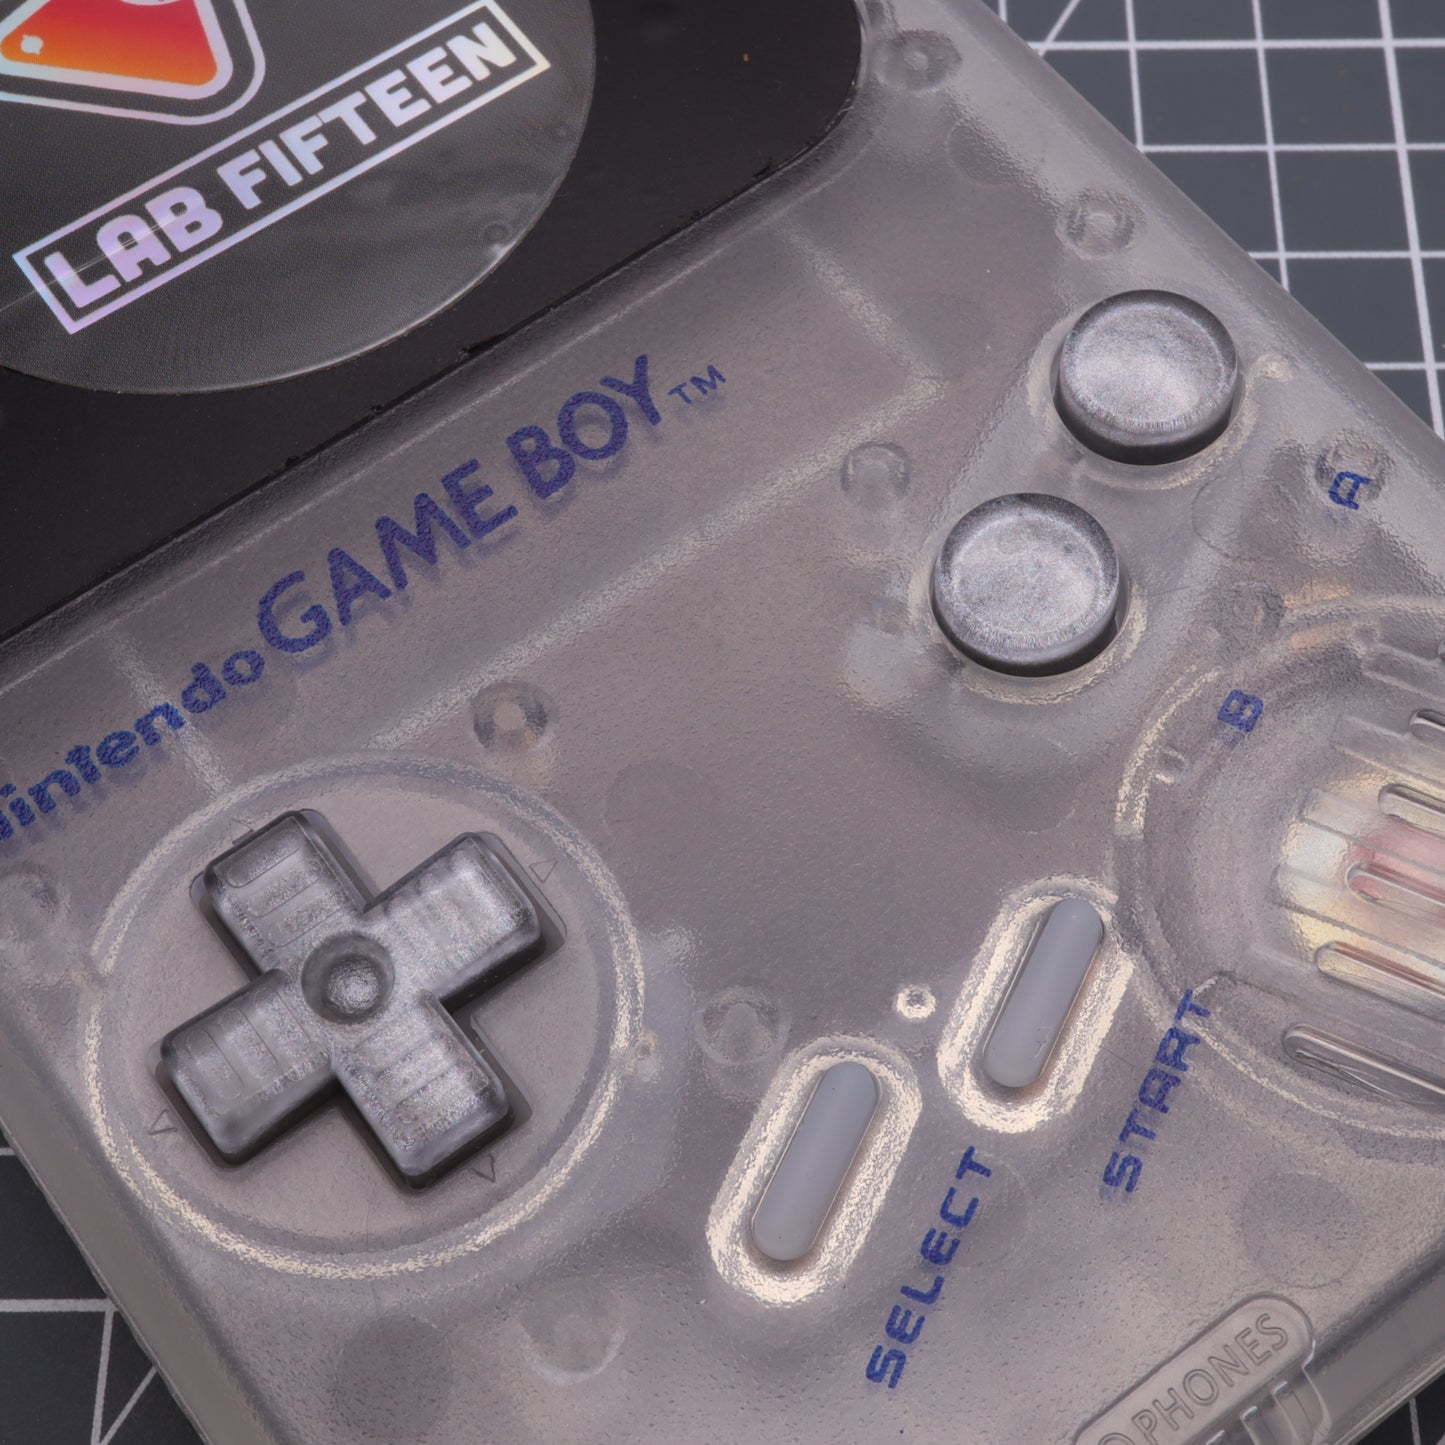 Game Boy DMG - Custom Button - Metallic Silver